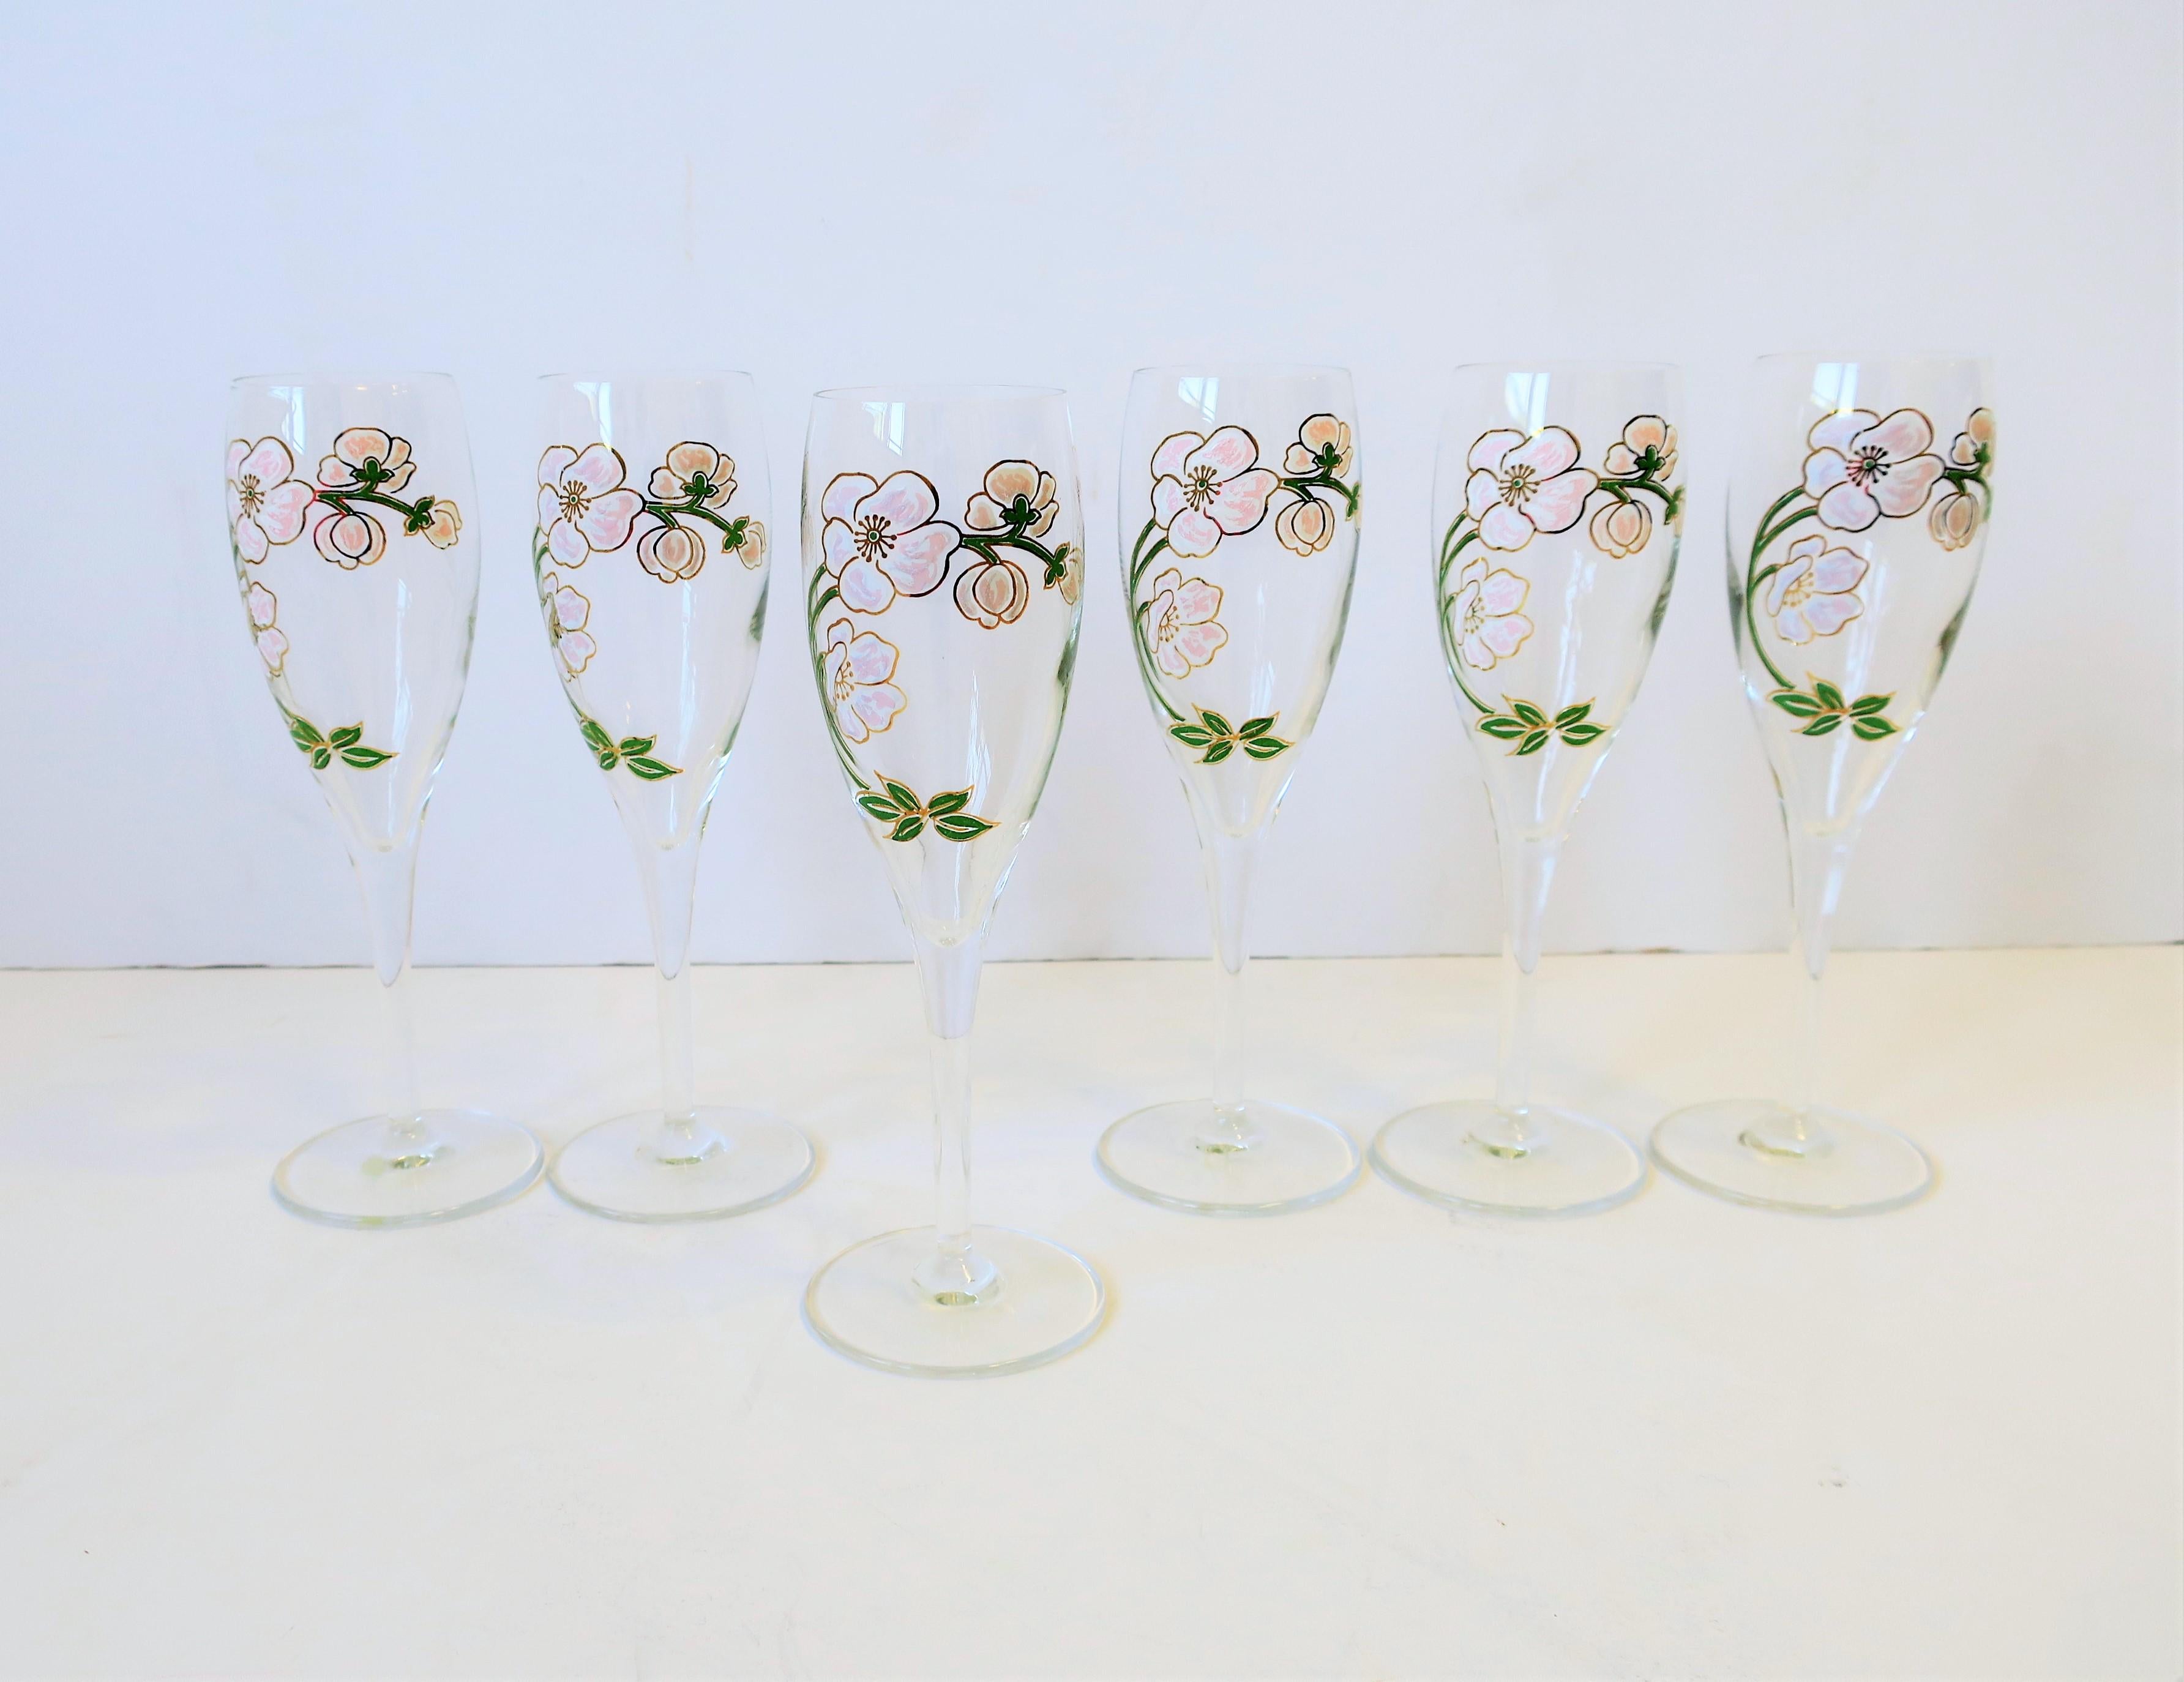 Un bel ensemble de six (6) verres à champagne français vintage Perrier-Jouet avec un motif floral iconique. 

Chaque mesure : 7 in H